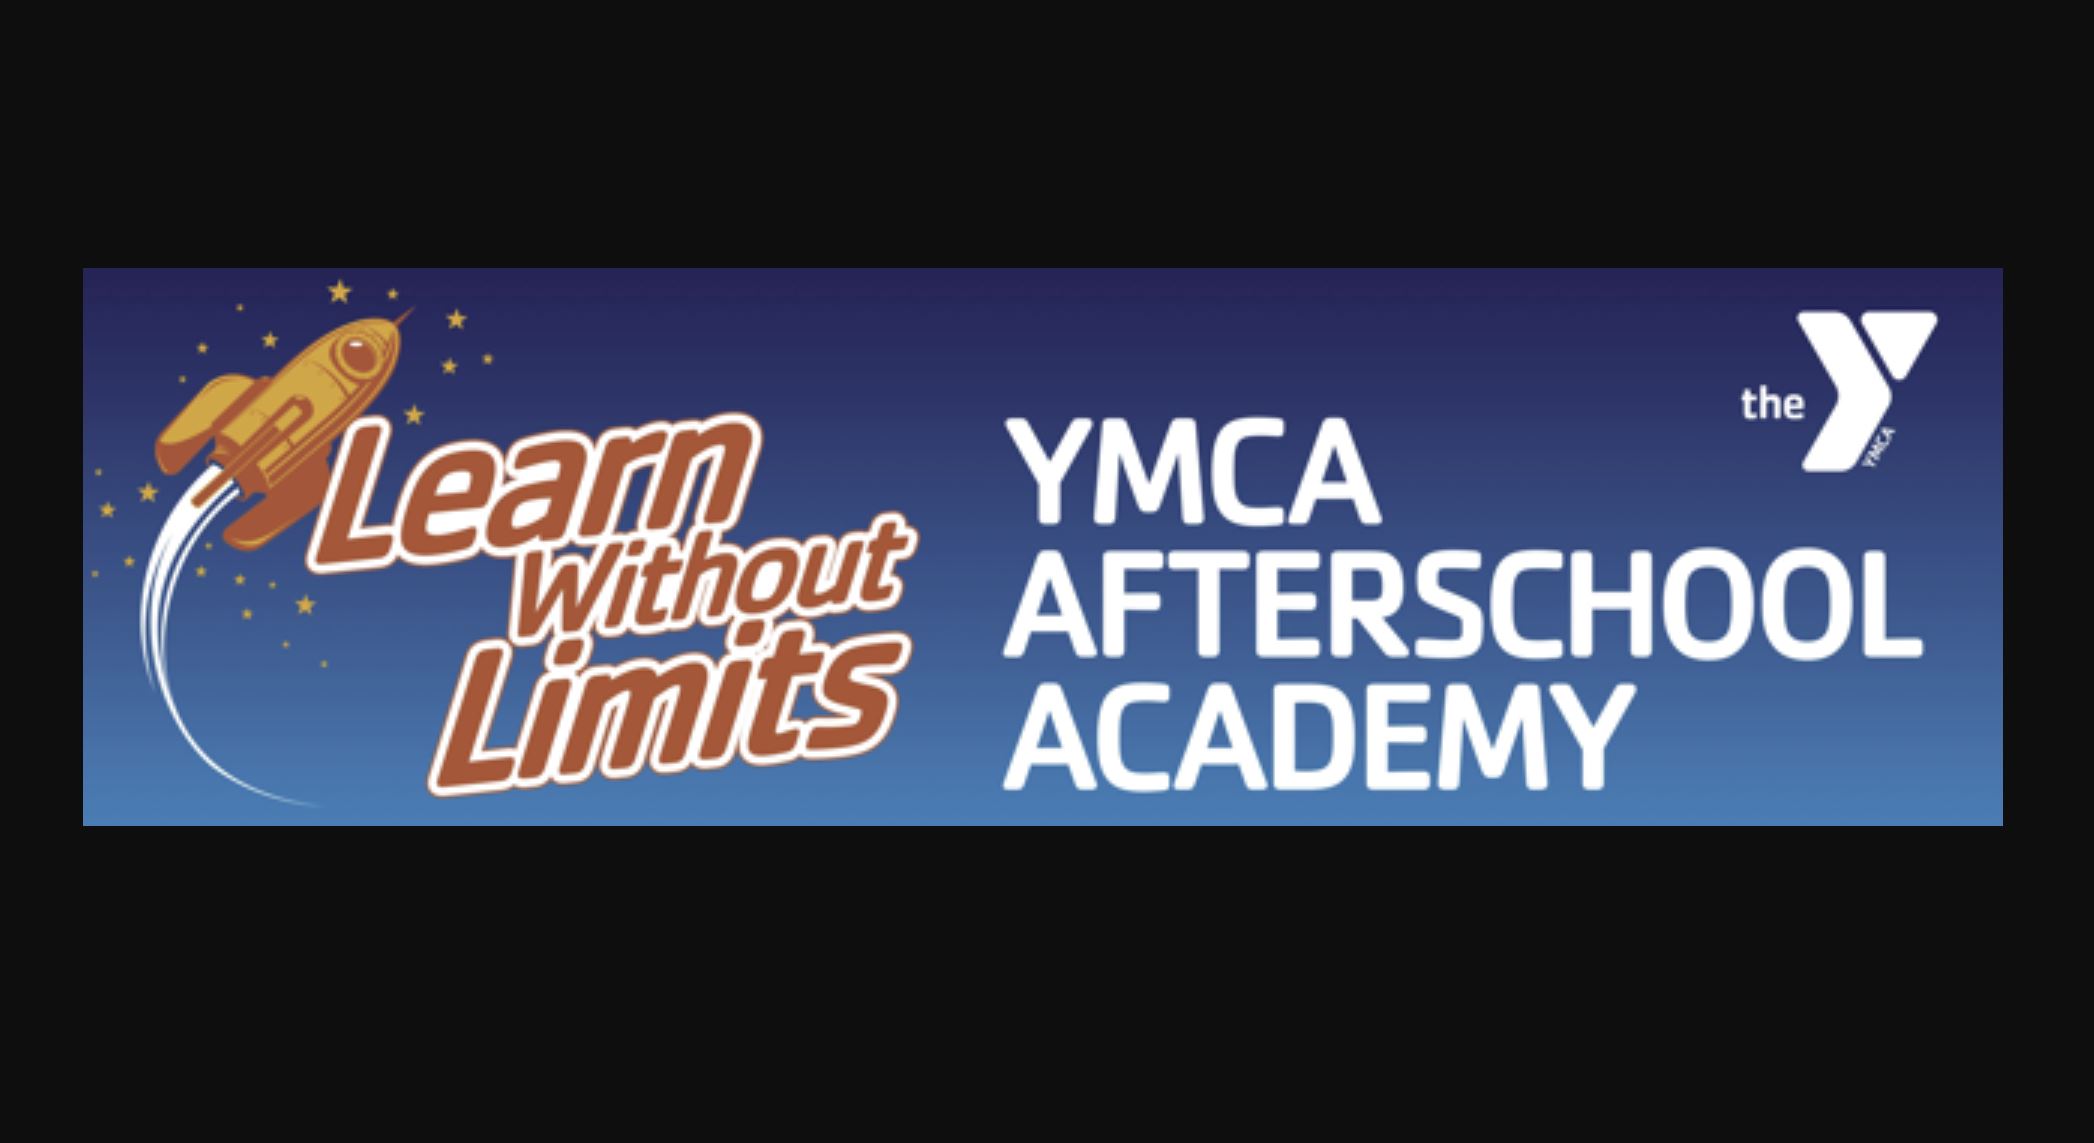 YMCA Afterschool Academy registration underway in Trussville